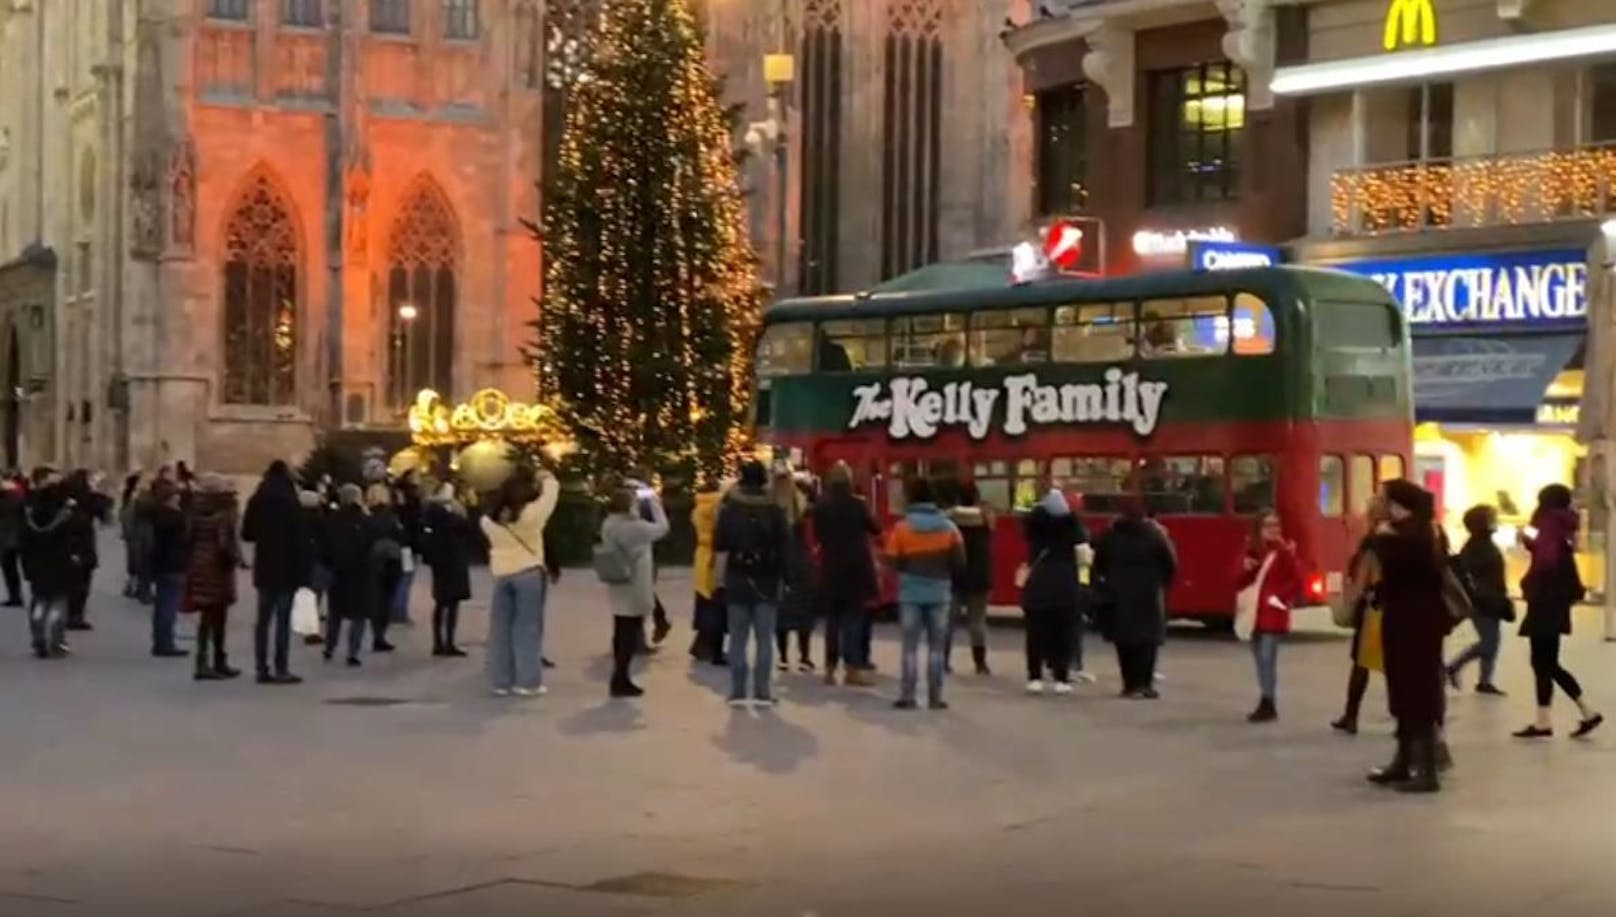 Die Kelly Family wurde in Wien gesichtet.